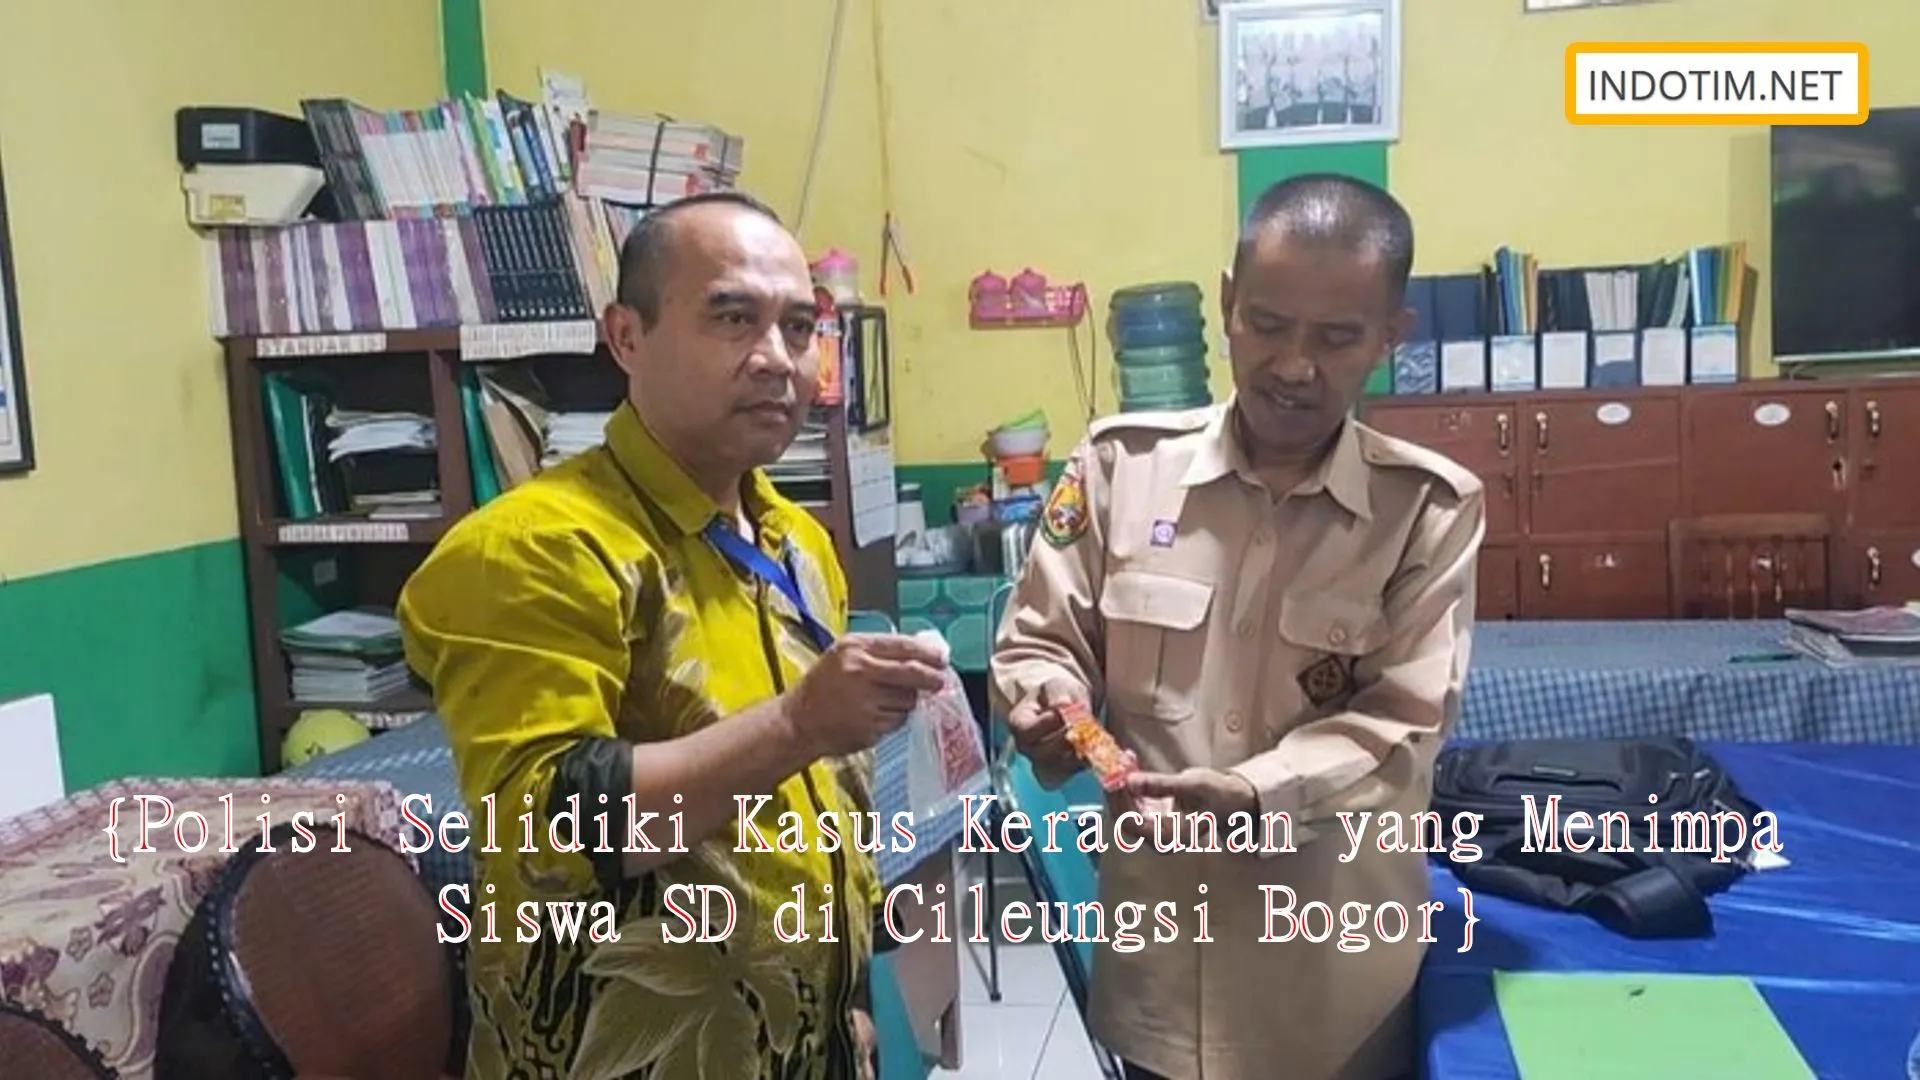 {Polisi Selidiki Kasus Keracunan yang Menimpa Siswa SD di Cileungsi Bogor}